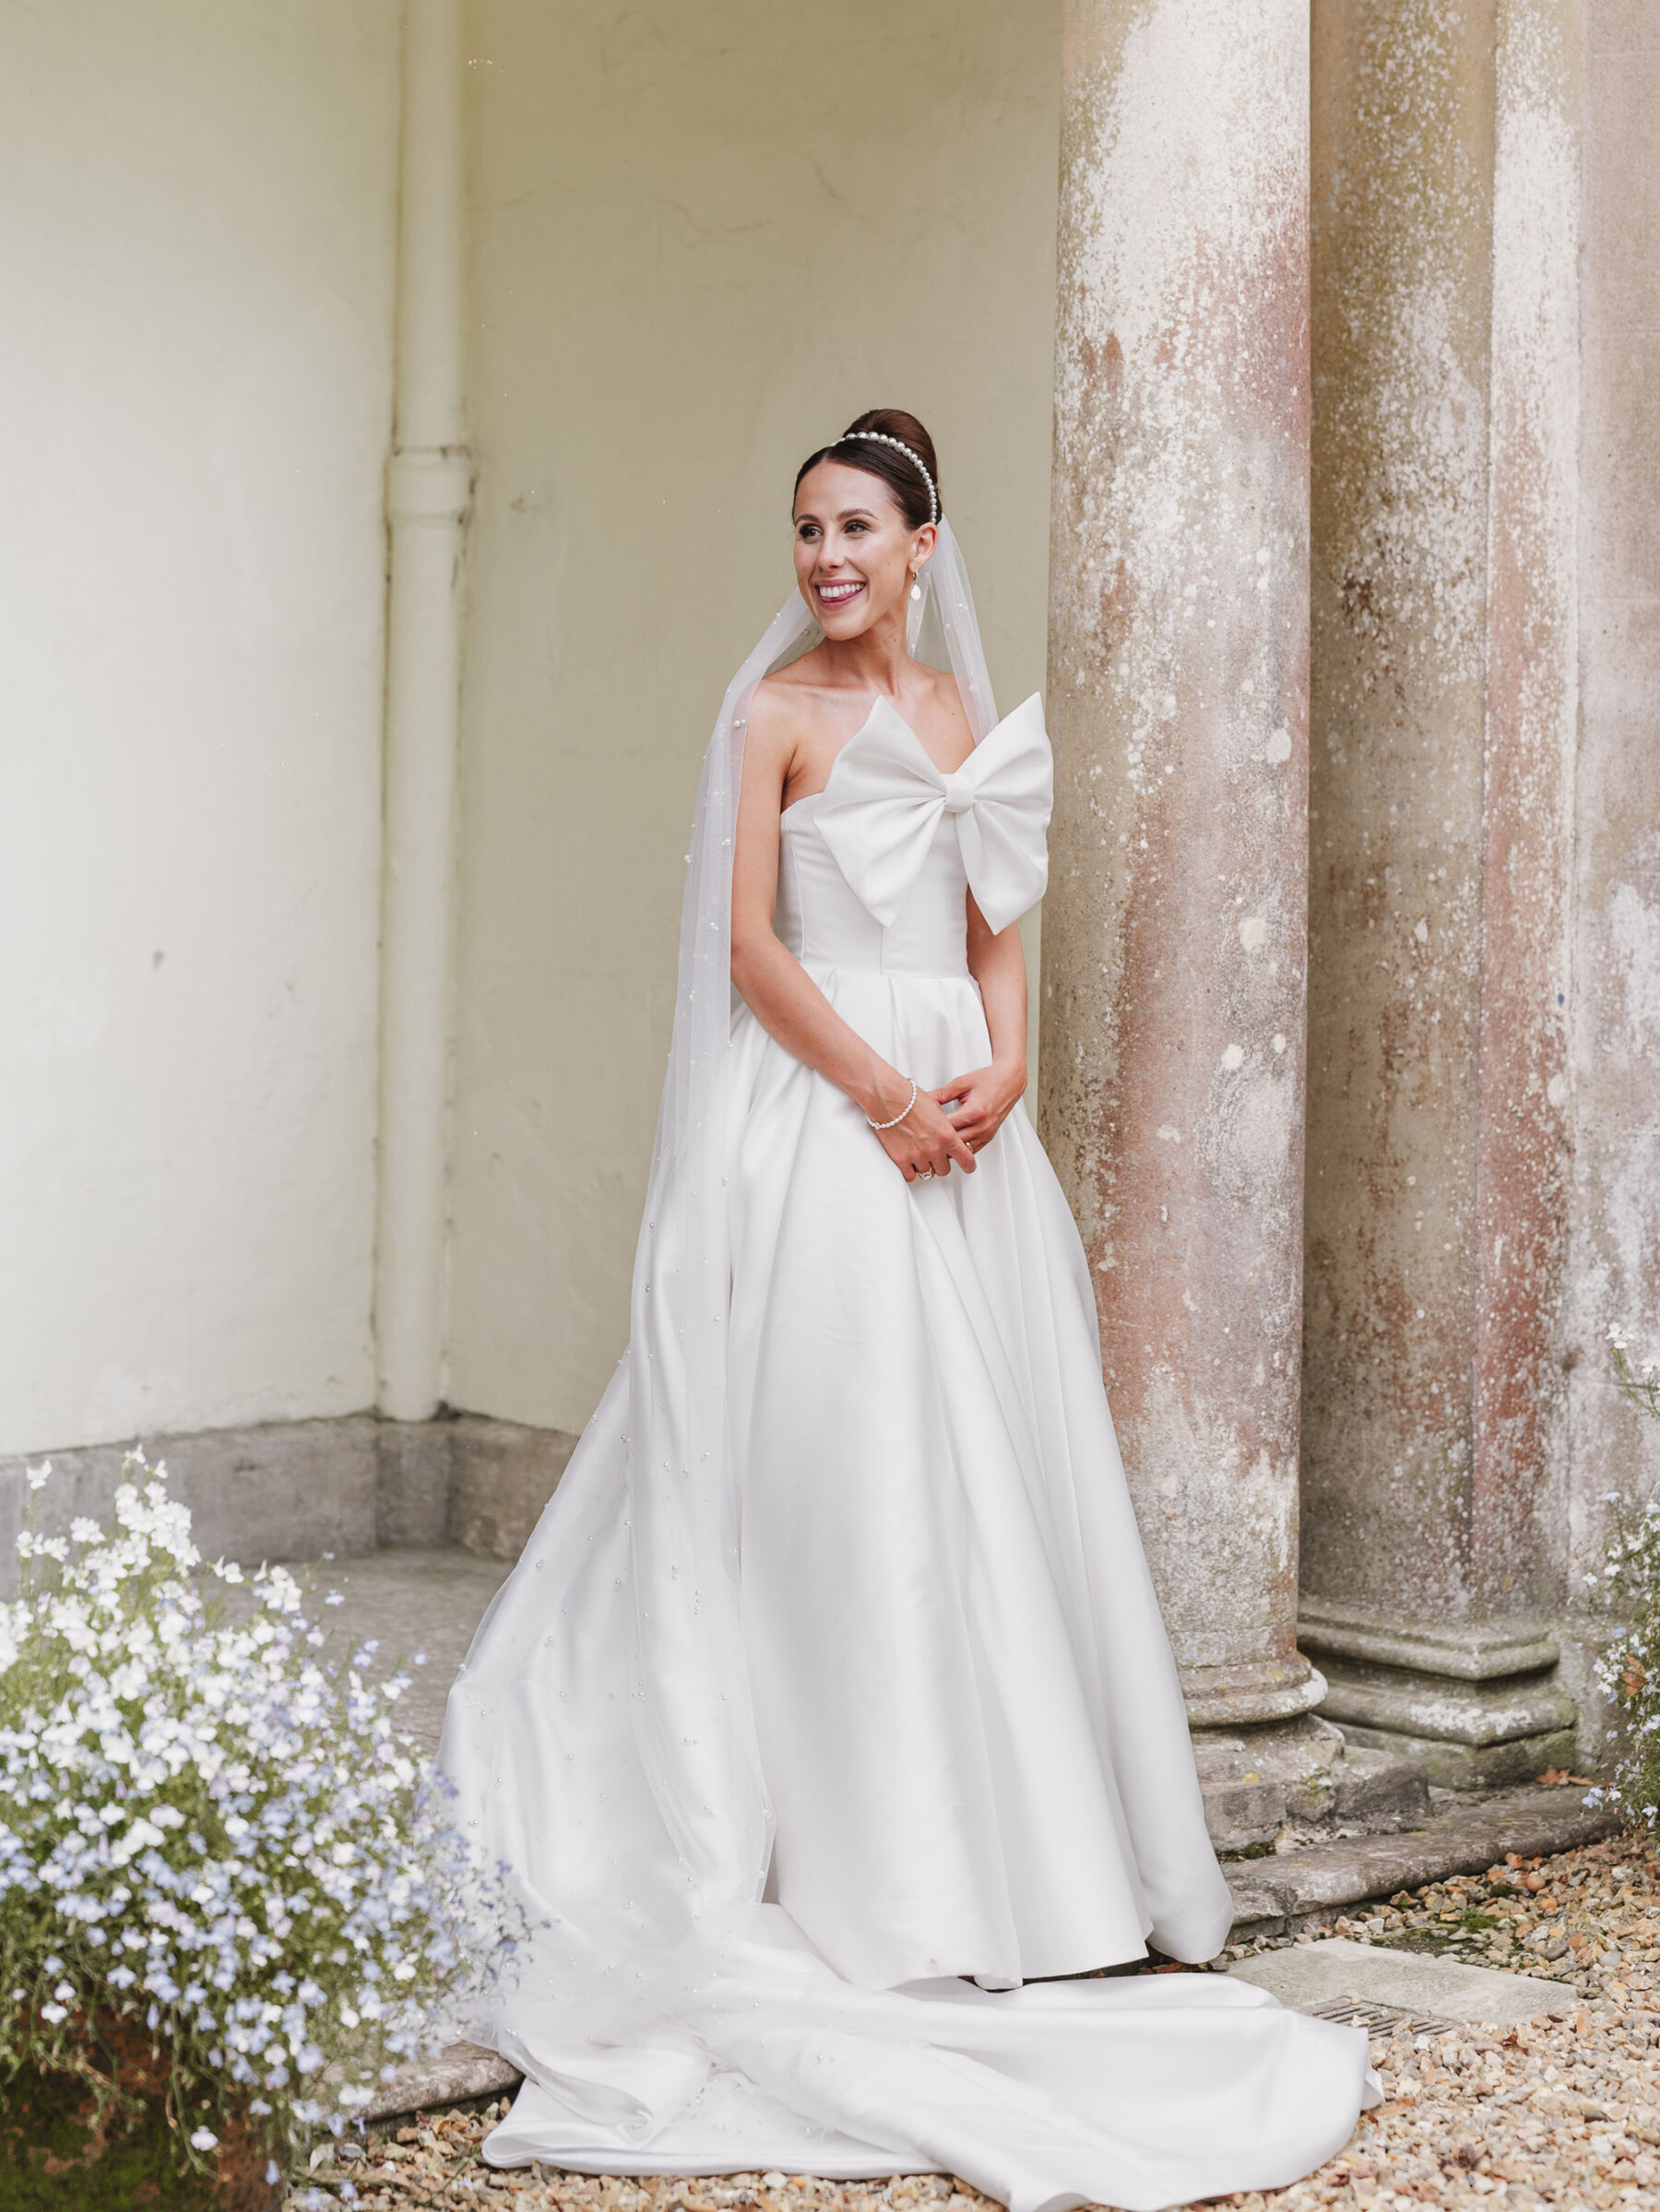 Elegant bride wearing a big bow wedding dress